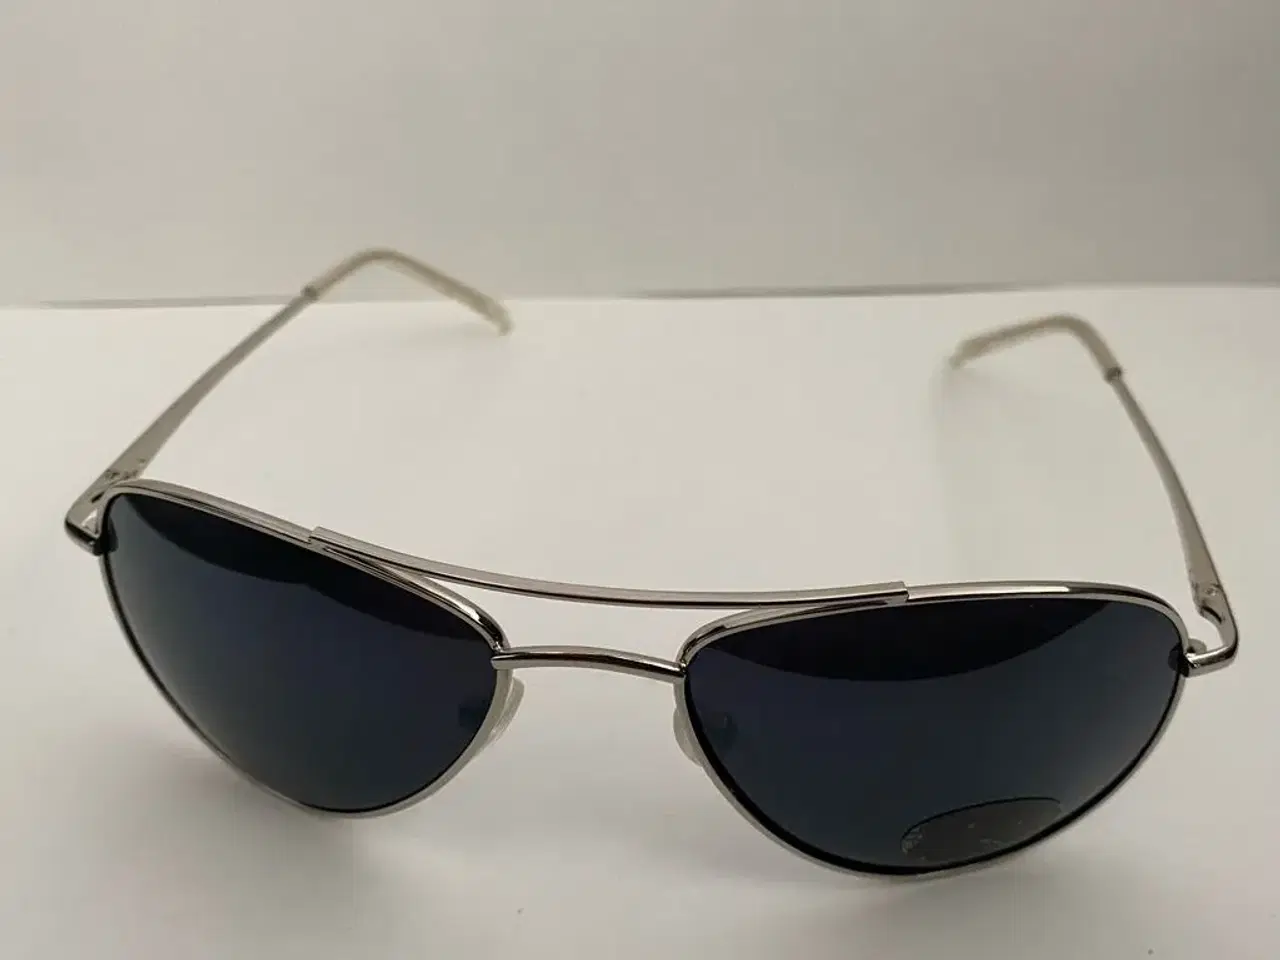 Billede 7 - Lækre solbriller